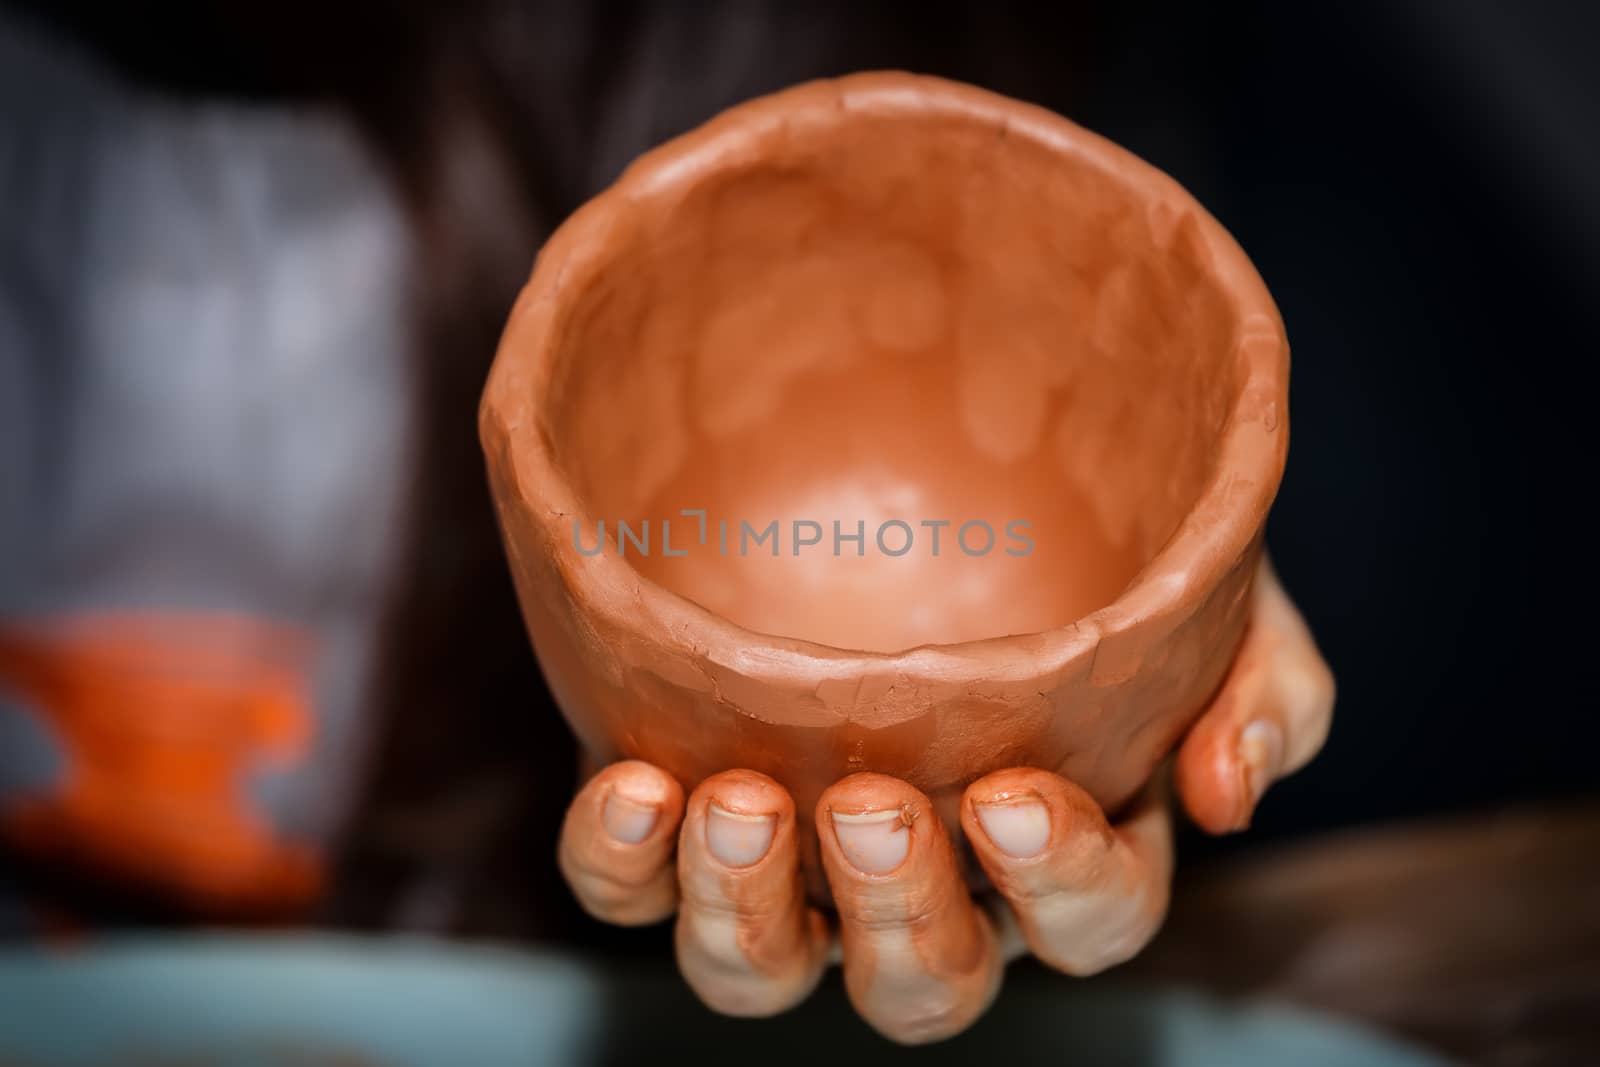 Pottery handmade by Roka